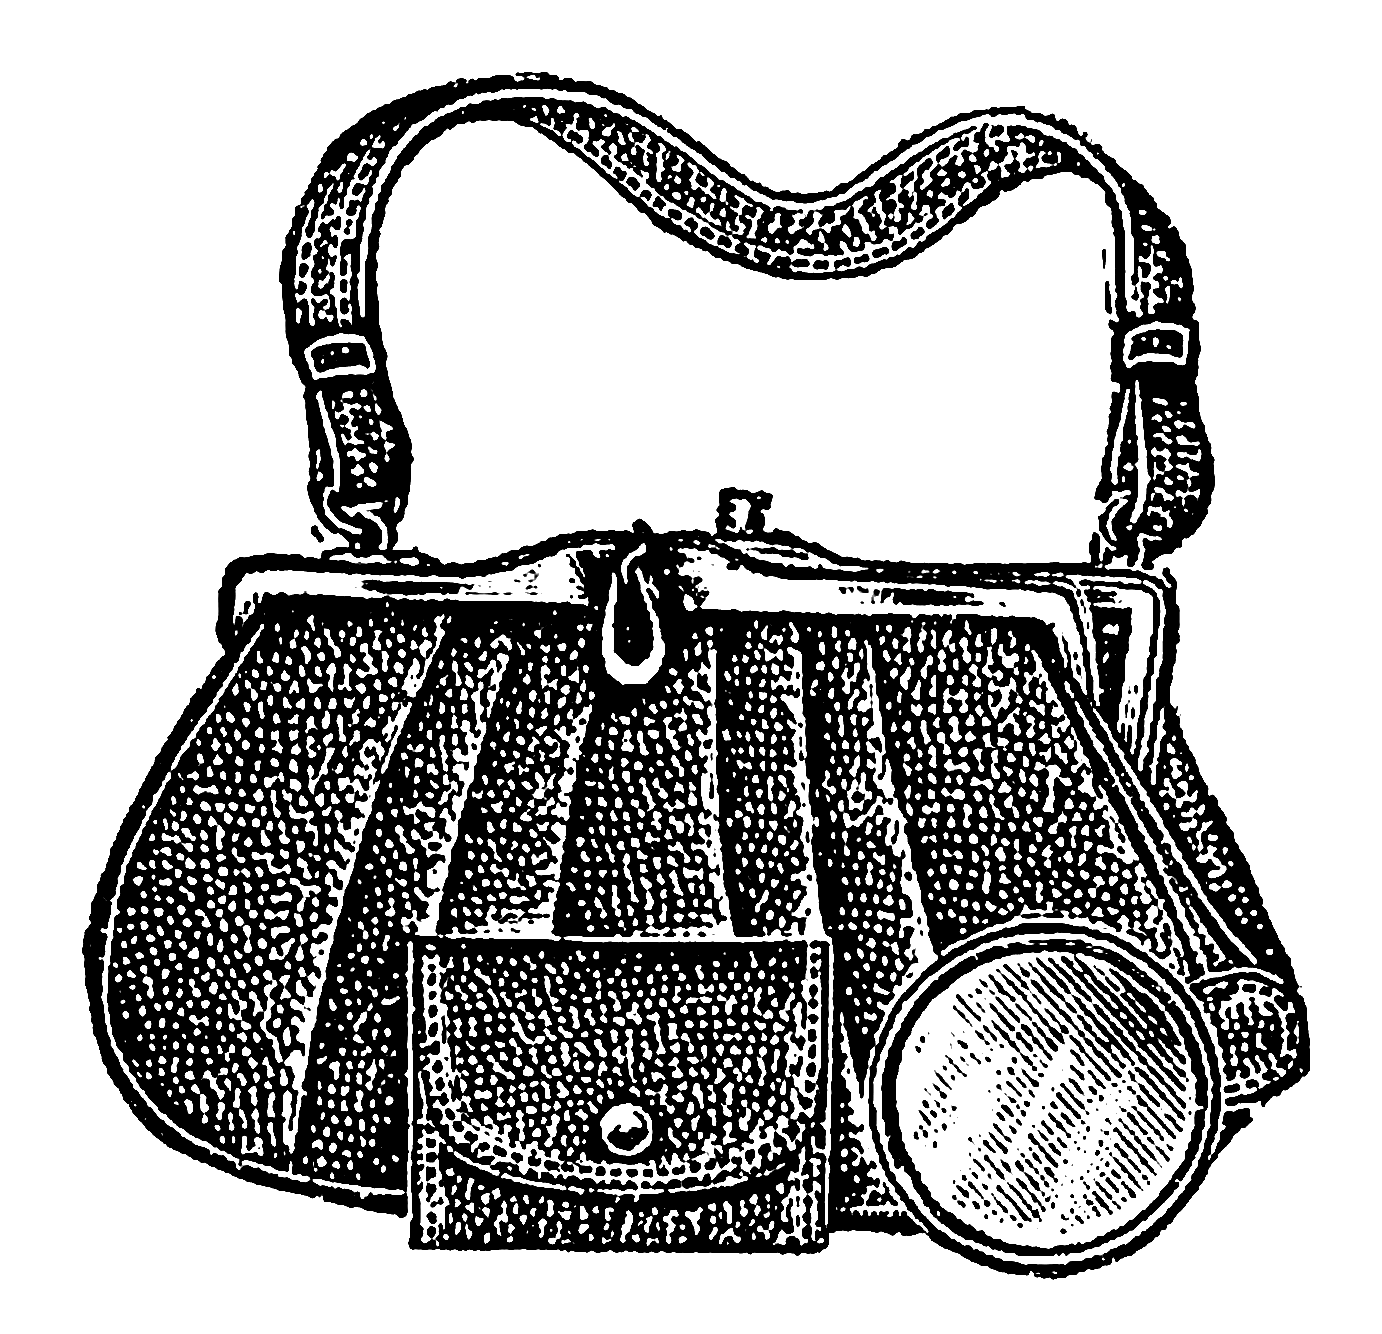 Handbag Black Drawing Download HD PNG Image